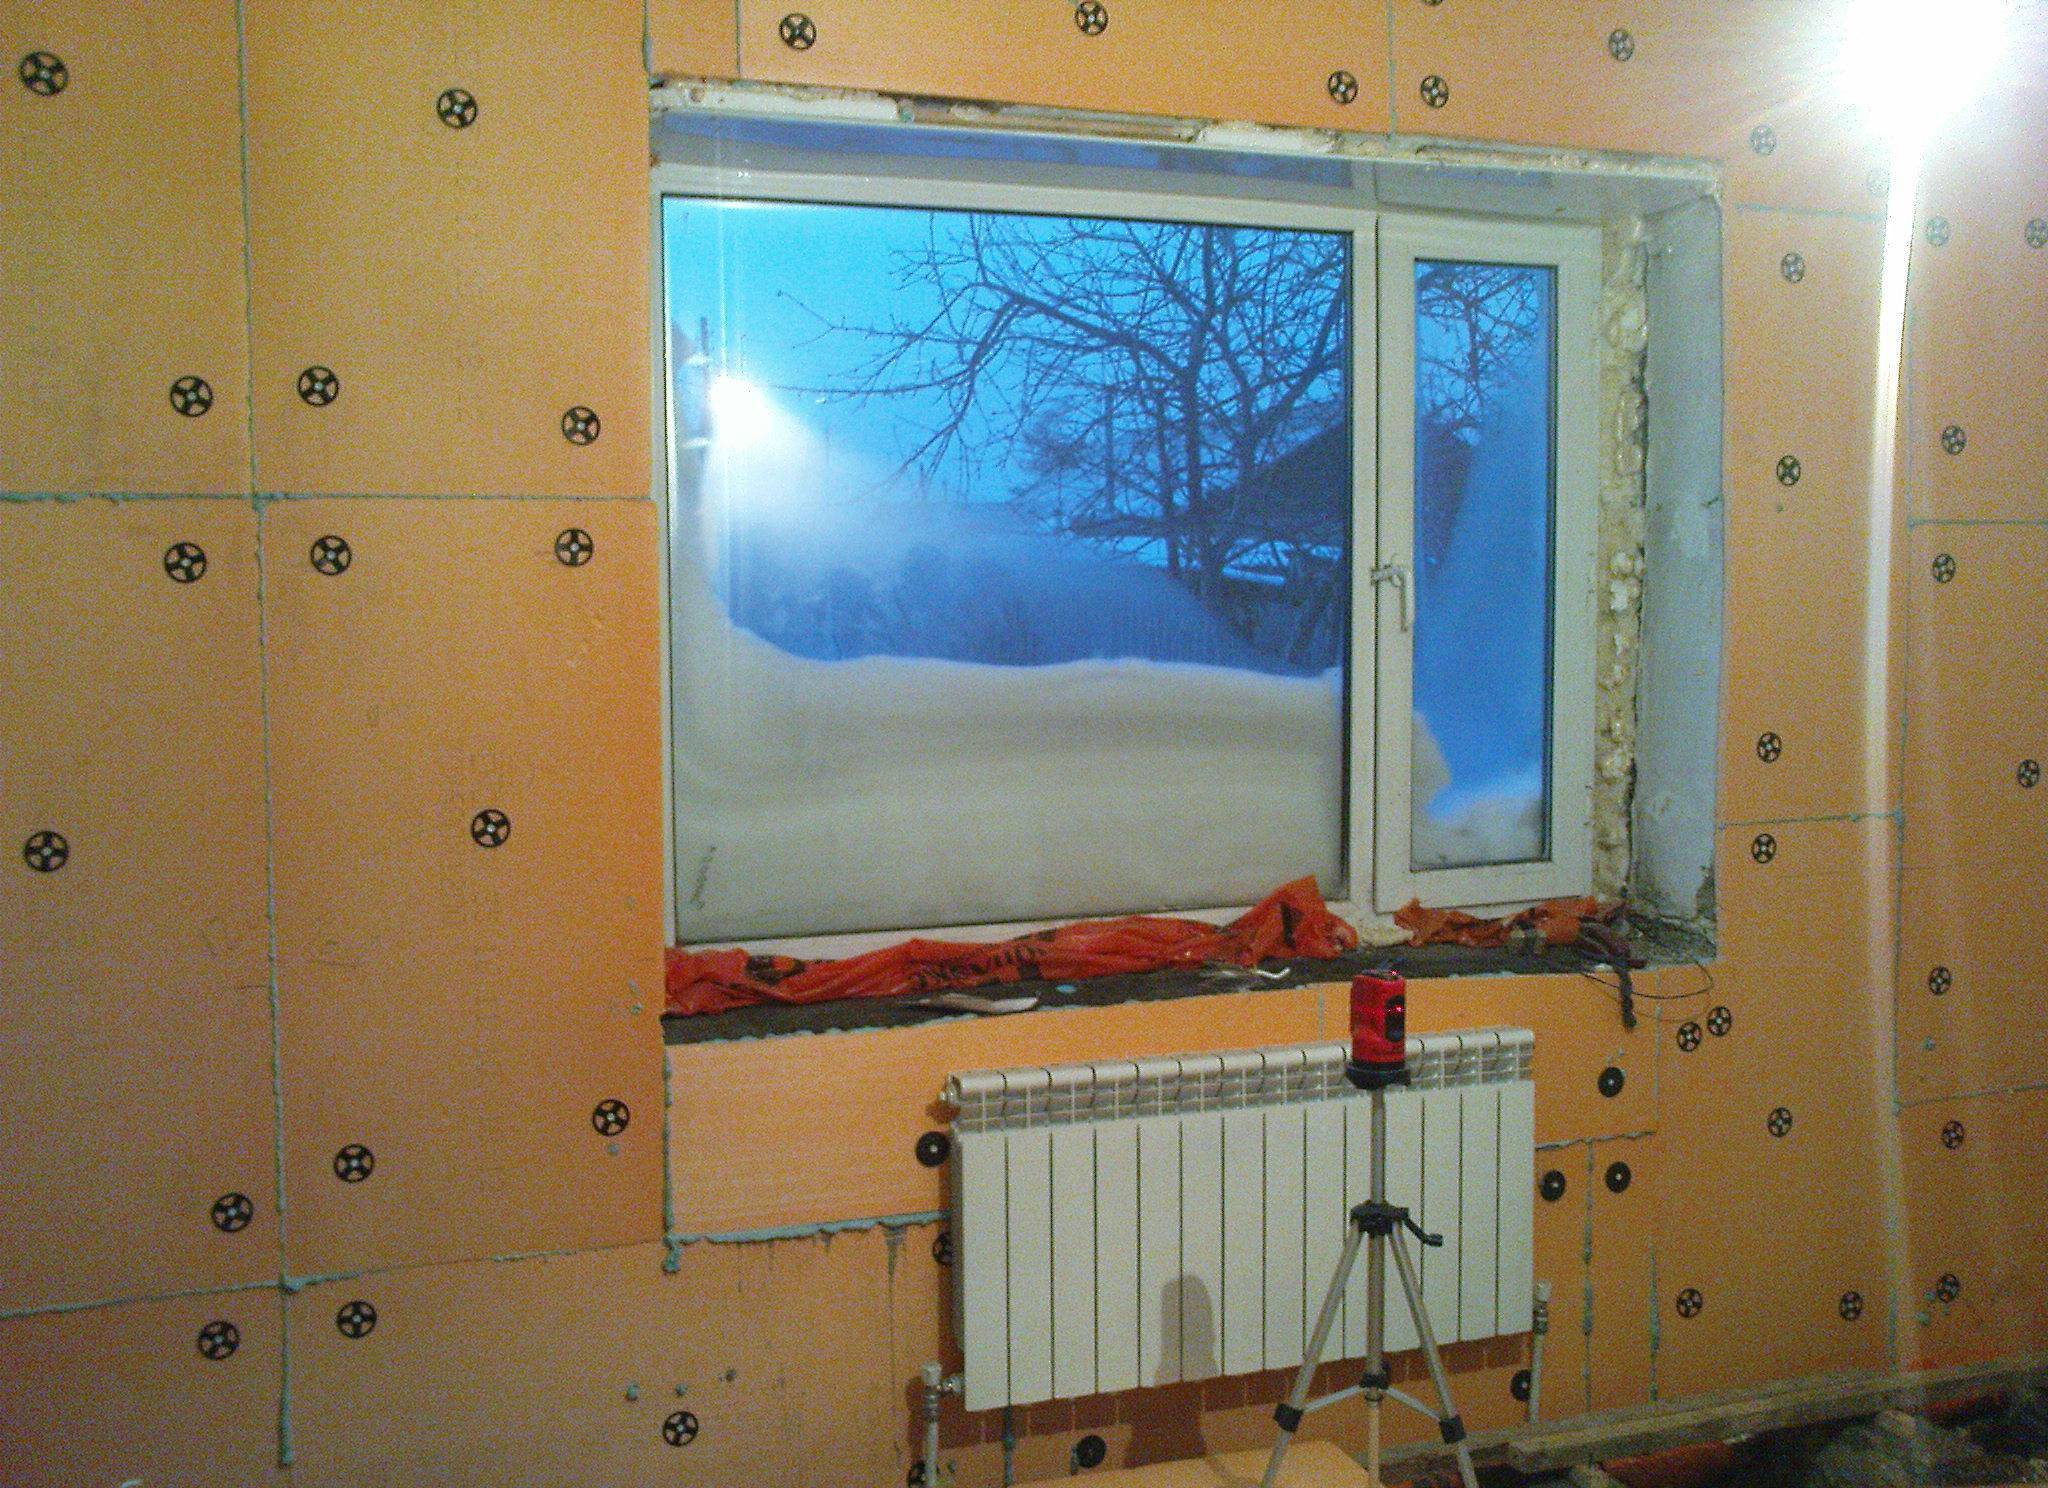 Утепление стен изнутри в квартире панельного дома: когда это необходимо, как утеплить внутри своими руками?